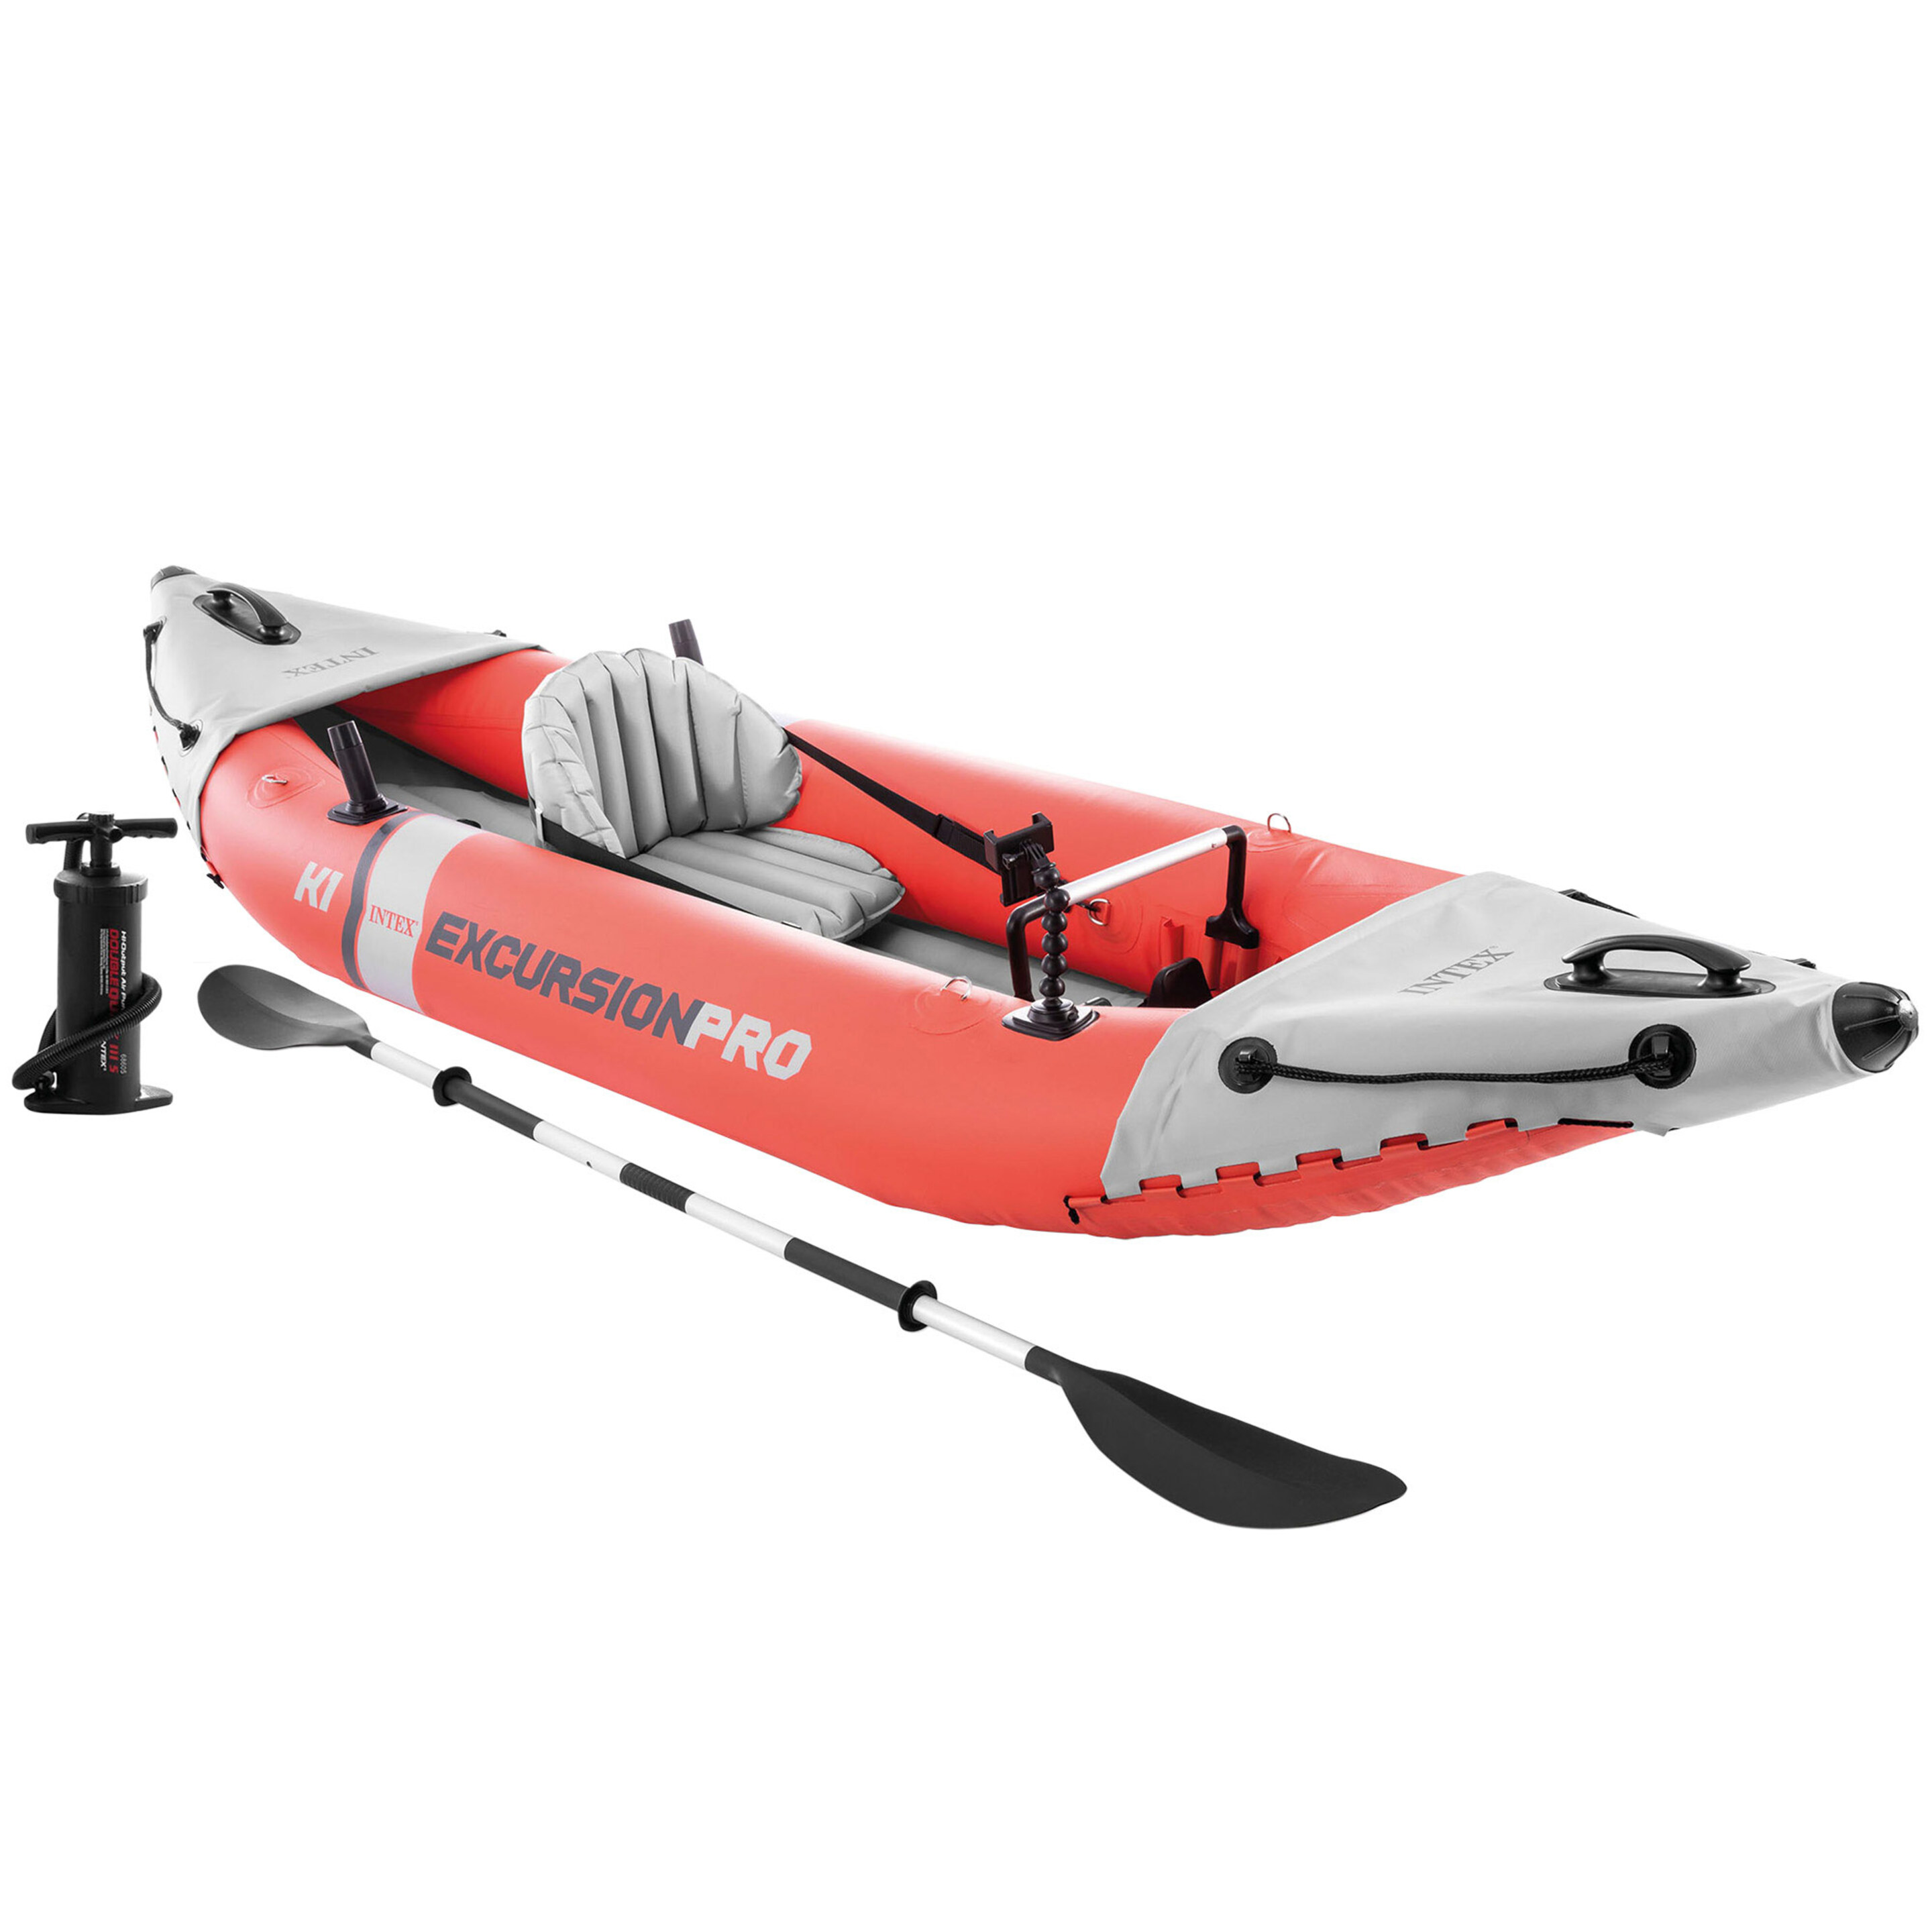 Kayak Hinchable Intex K1 Excursion Pro 1 Remo + Hinchador - rojo - 